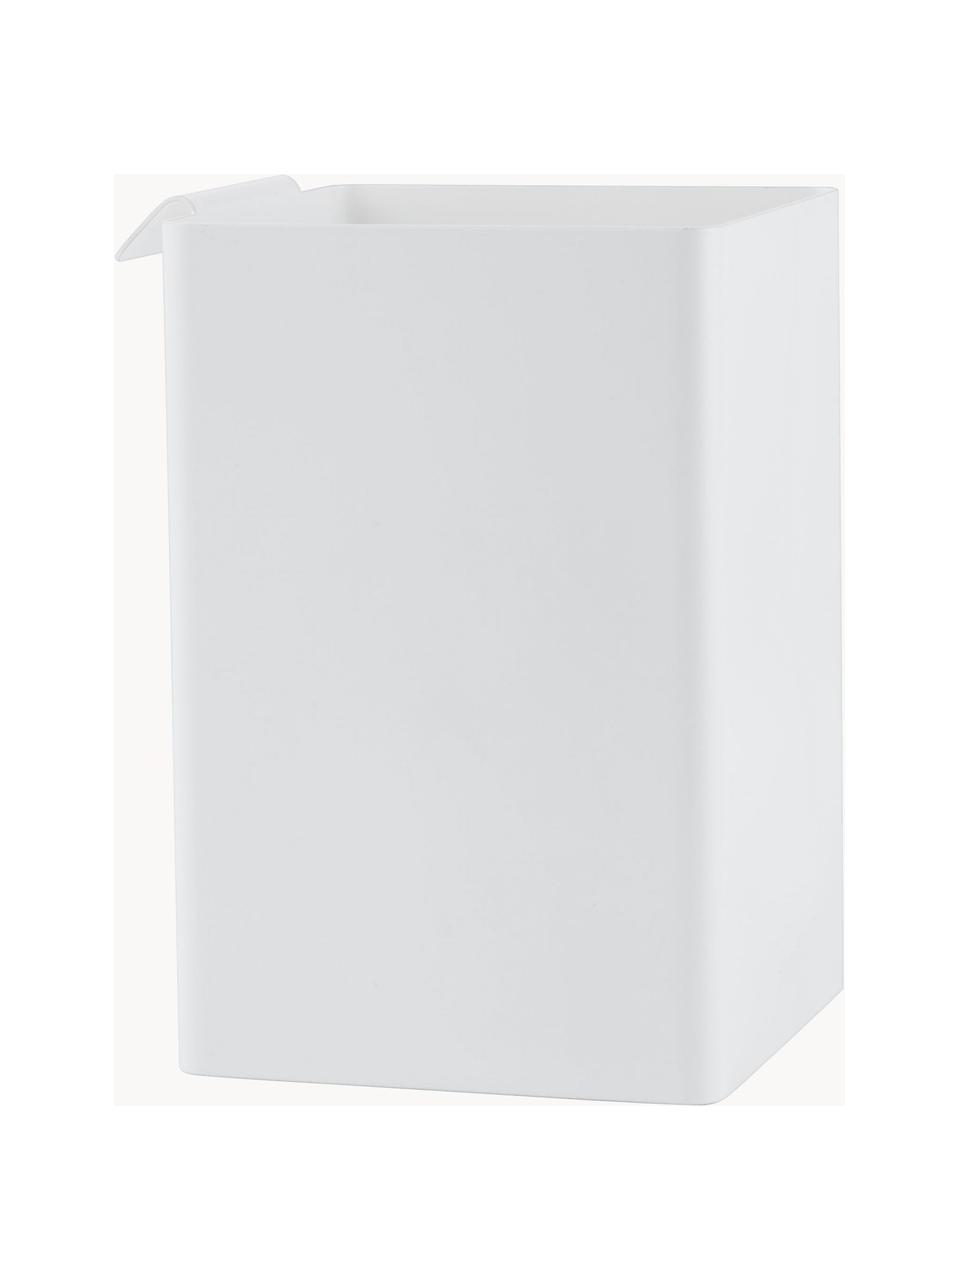 Stahl-Küchenaufbewahrungsbox Flex, Stahl, beschichtet, Weiß, B 11 x H 16 cm